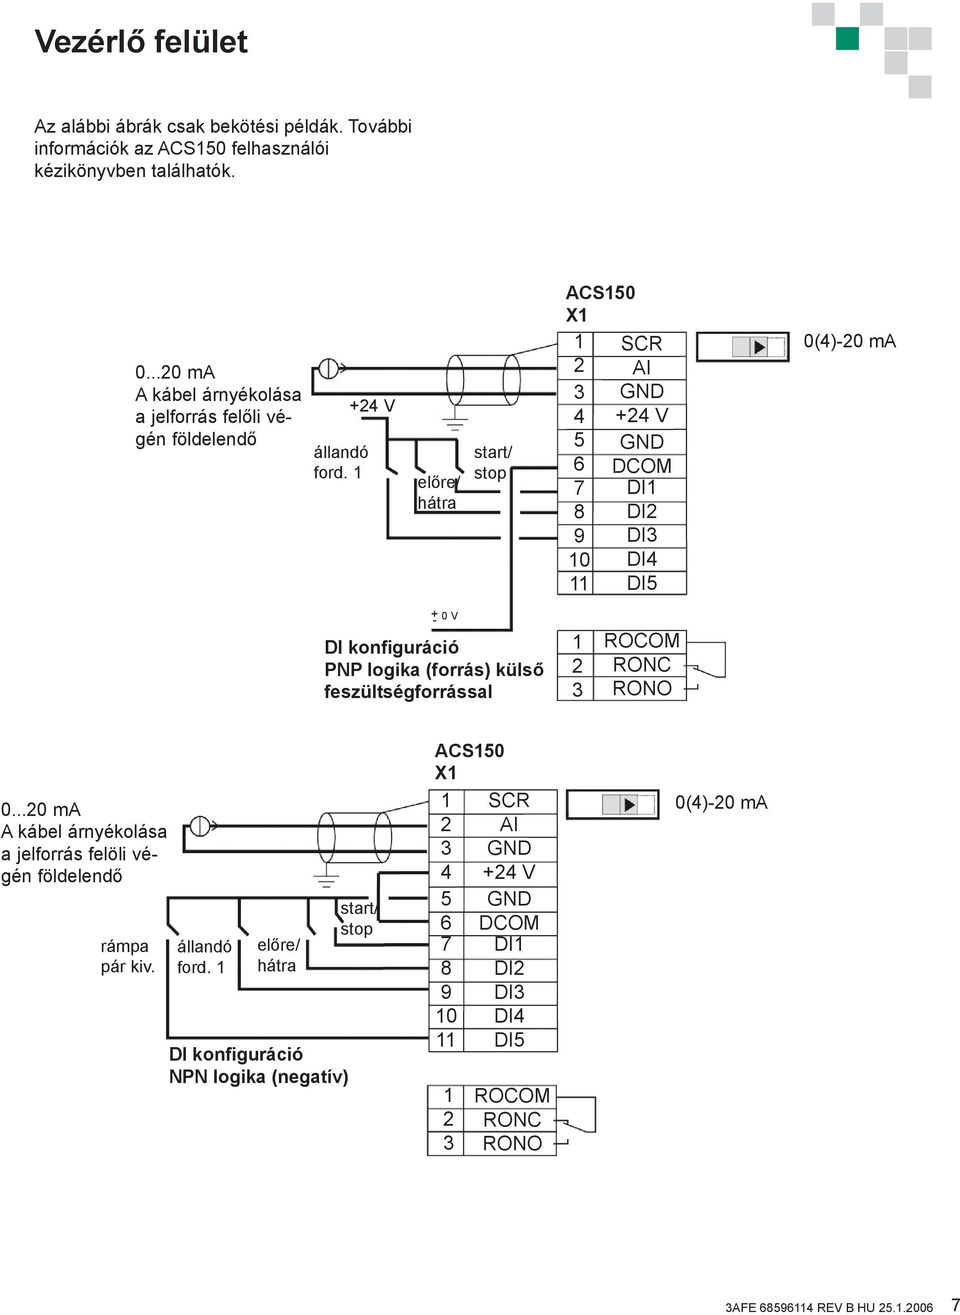 1 +4 V előre/ hátra start/ stop ACS150 X1 1 3 4 5 6 7 8 9 10 11 SCR AI GND +4 V GND DCOM DI1 DI DI3 DI4 DI5 0(4)-0 ma + 0 V - DI konfiguráció PNP logika (forrás) külső